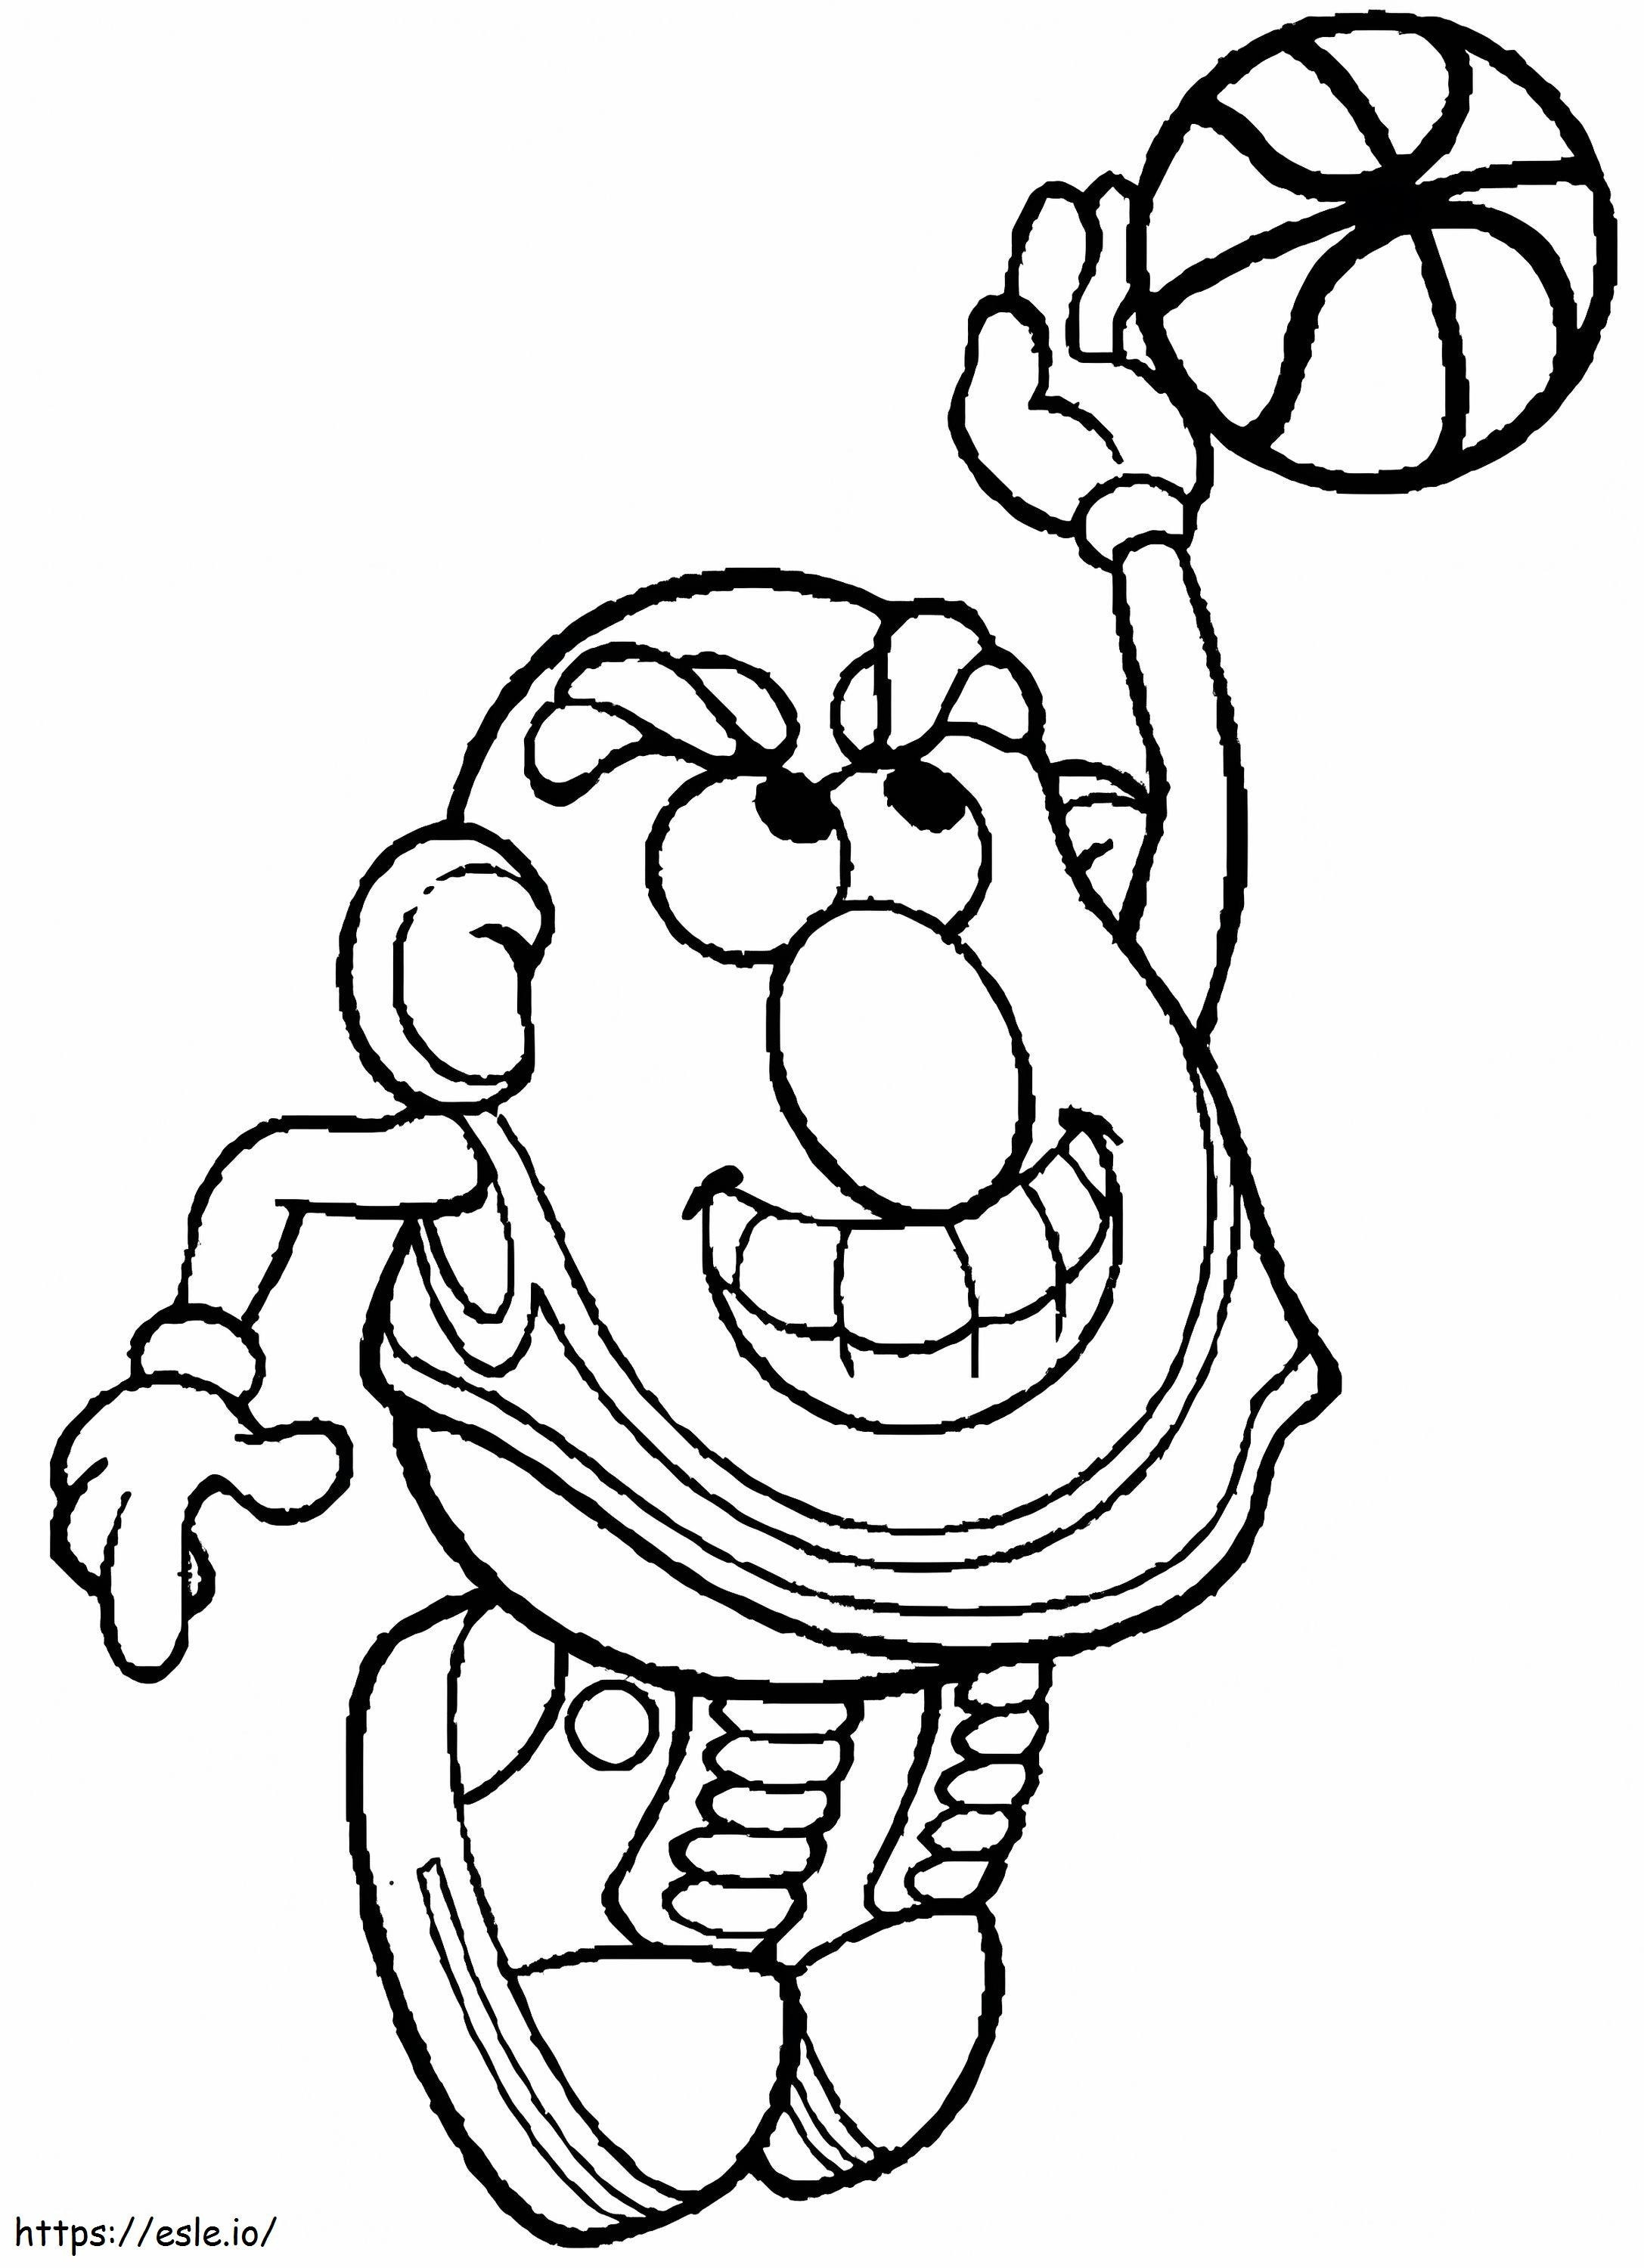 Pan Ziemniak grający w koszykówkę kolorowanka